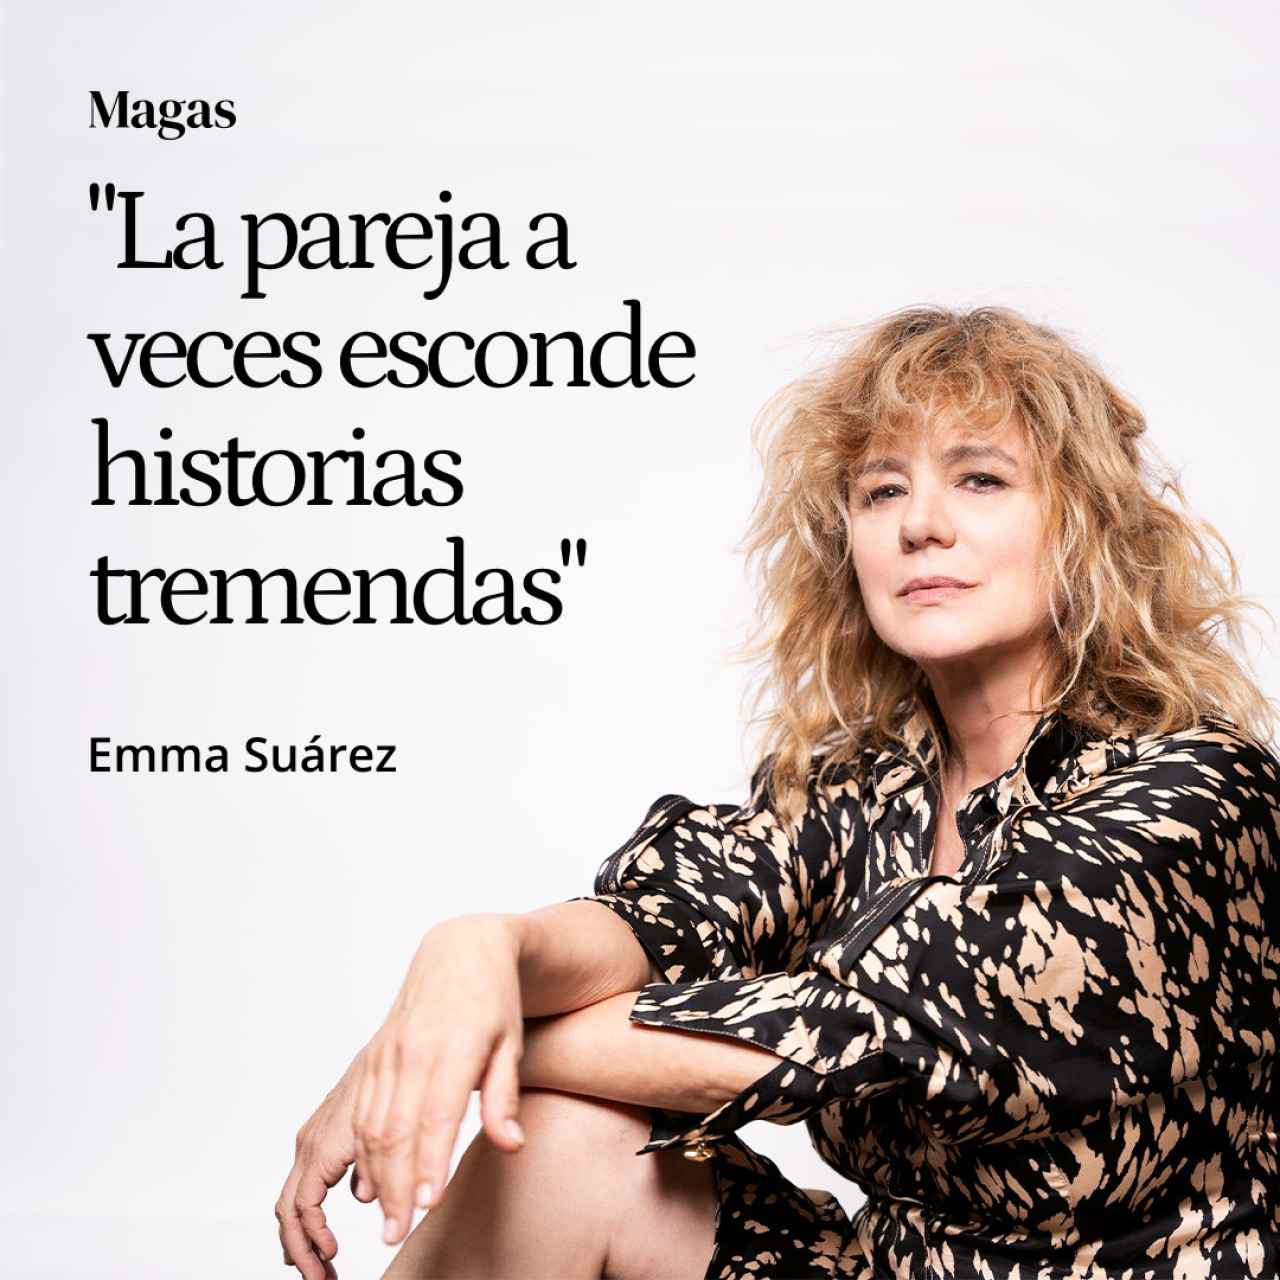 Emma Suárez sobre lo inevitable del amor: “La pareja a veces esconde historias tremendas”